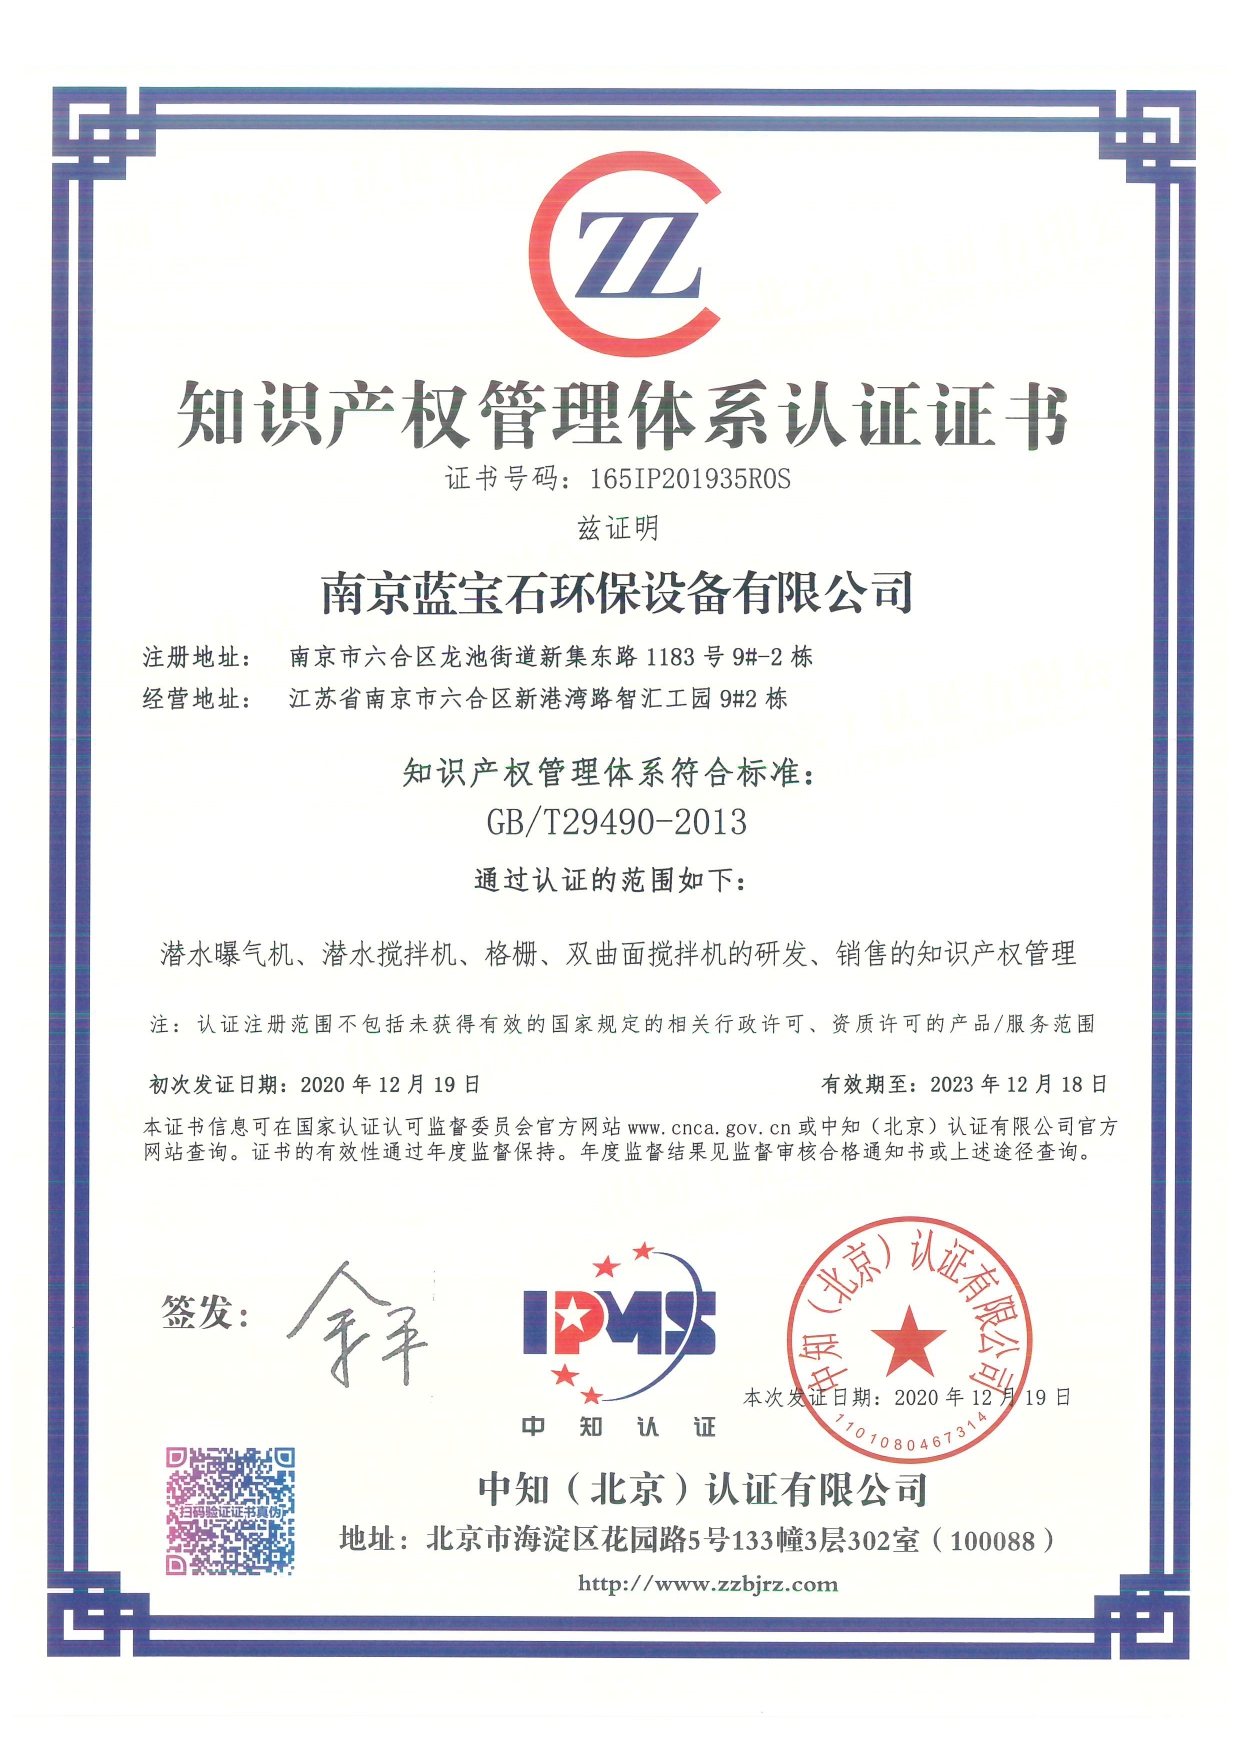 南京藍寶石環保設備有限公司通過知識產權管理體系認證